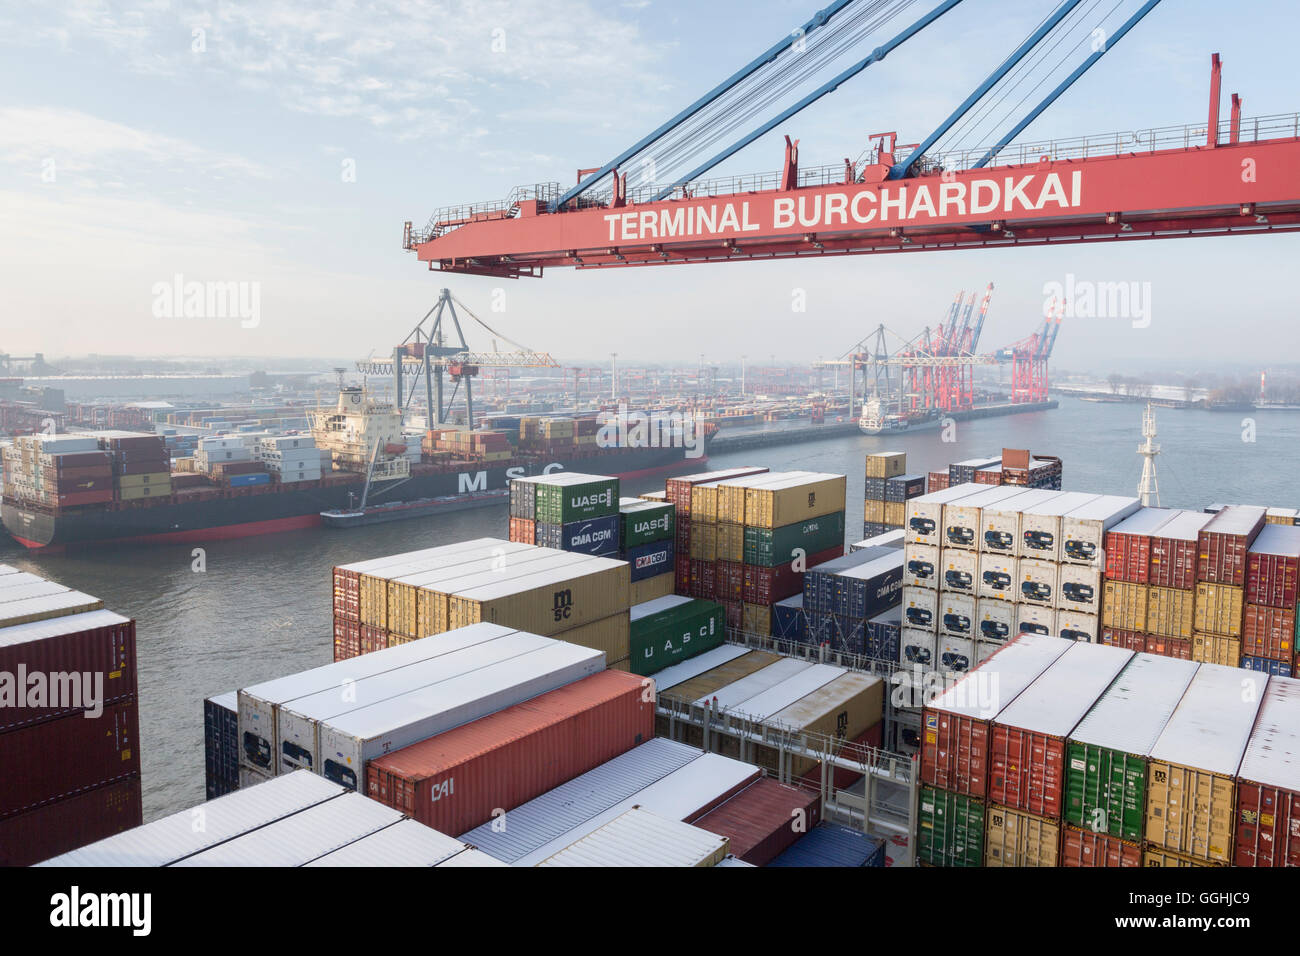 Be- und Entladen von das Containerschiff CMA CGM Marco Polo in die Container Terminal Burchardkai in Hamburg, Deutschland Stockfoto